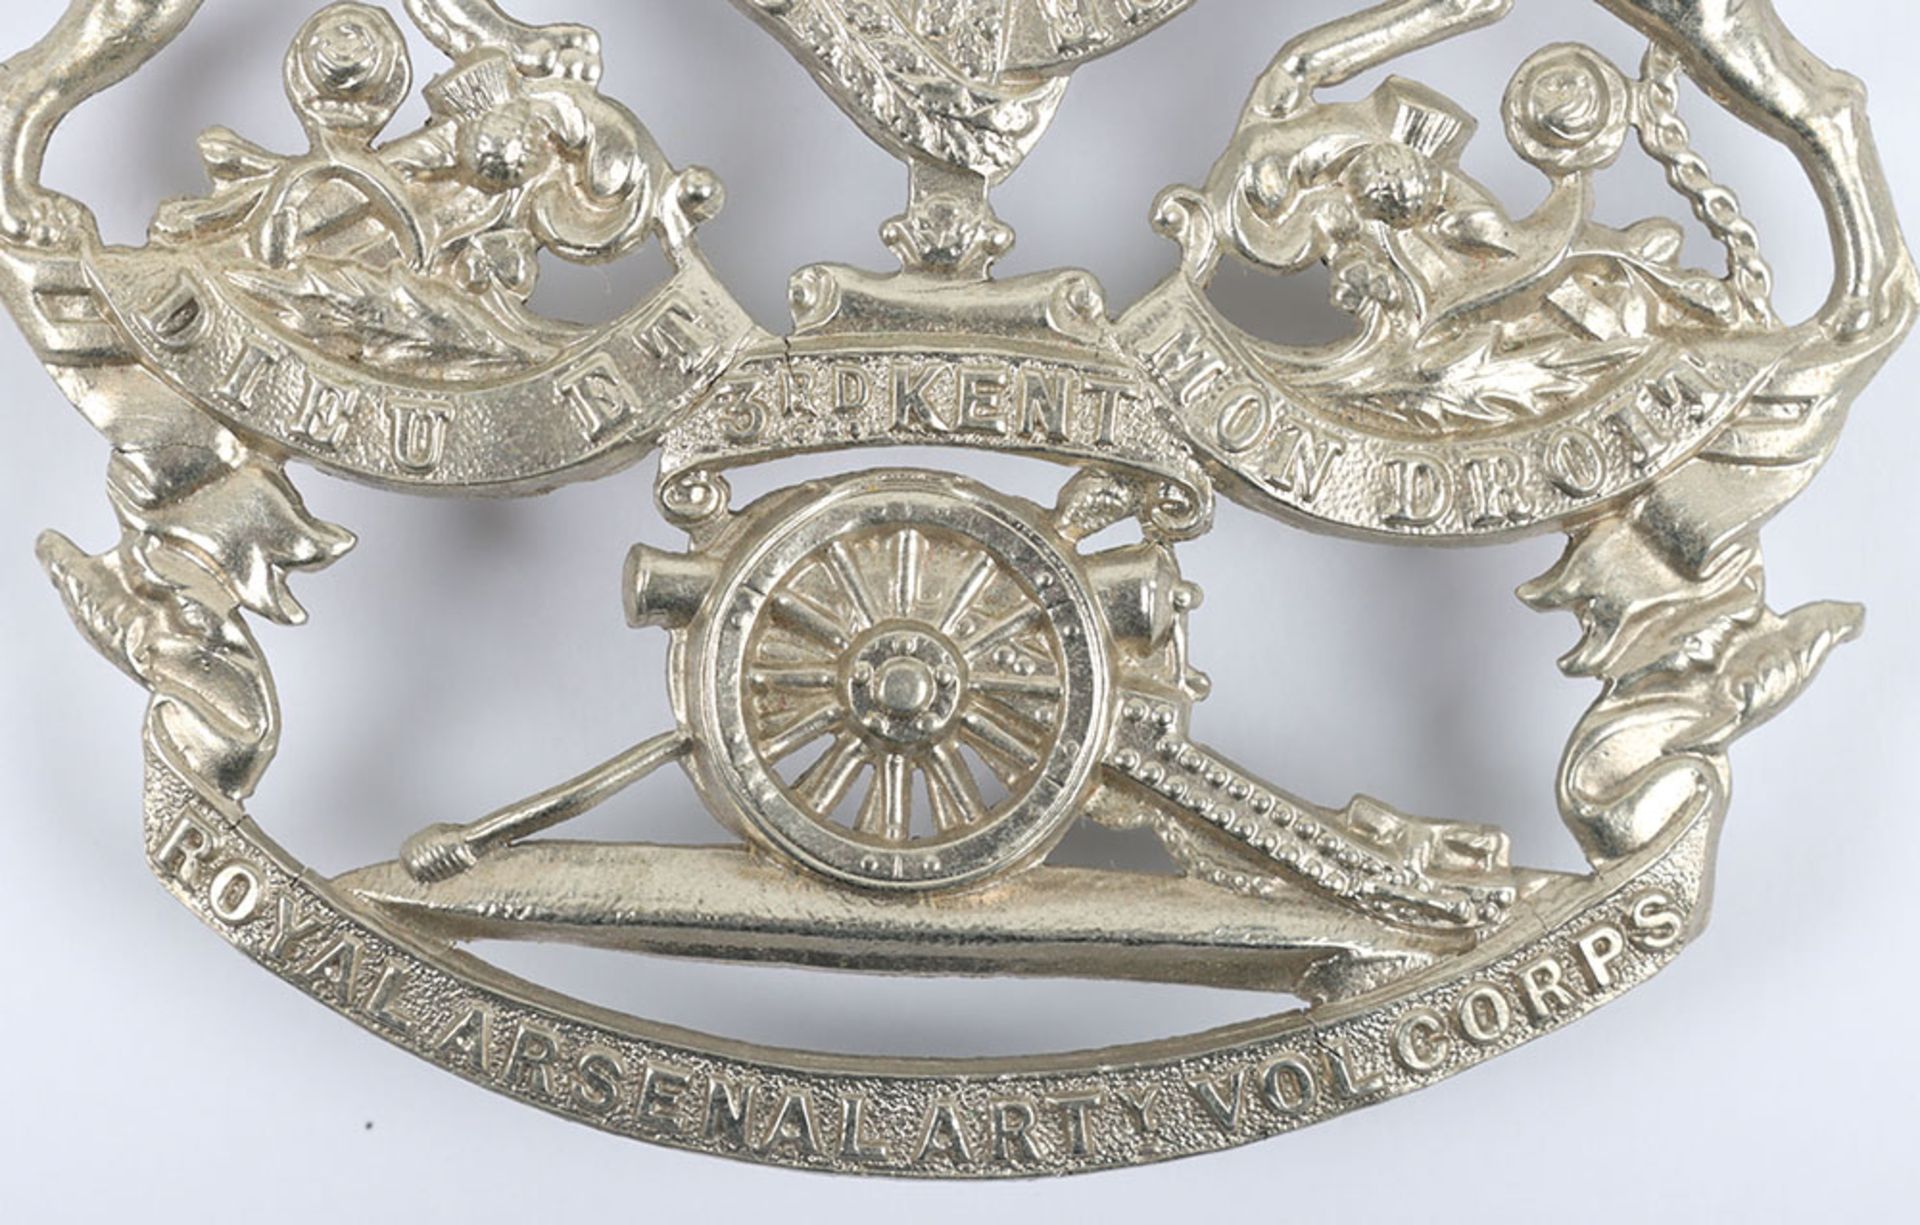 Victorian 3rd Kent Royal Arsenal Artillery Volunteer Corps Home Service Helmet Plate - Bild 4 aus 6